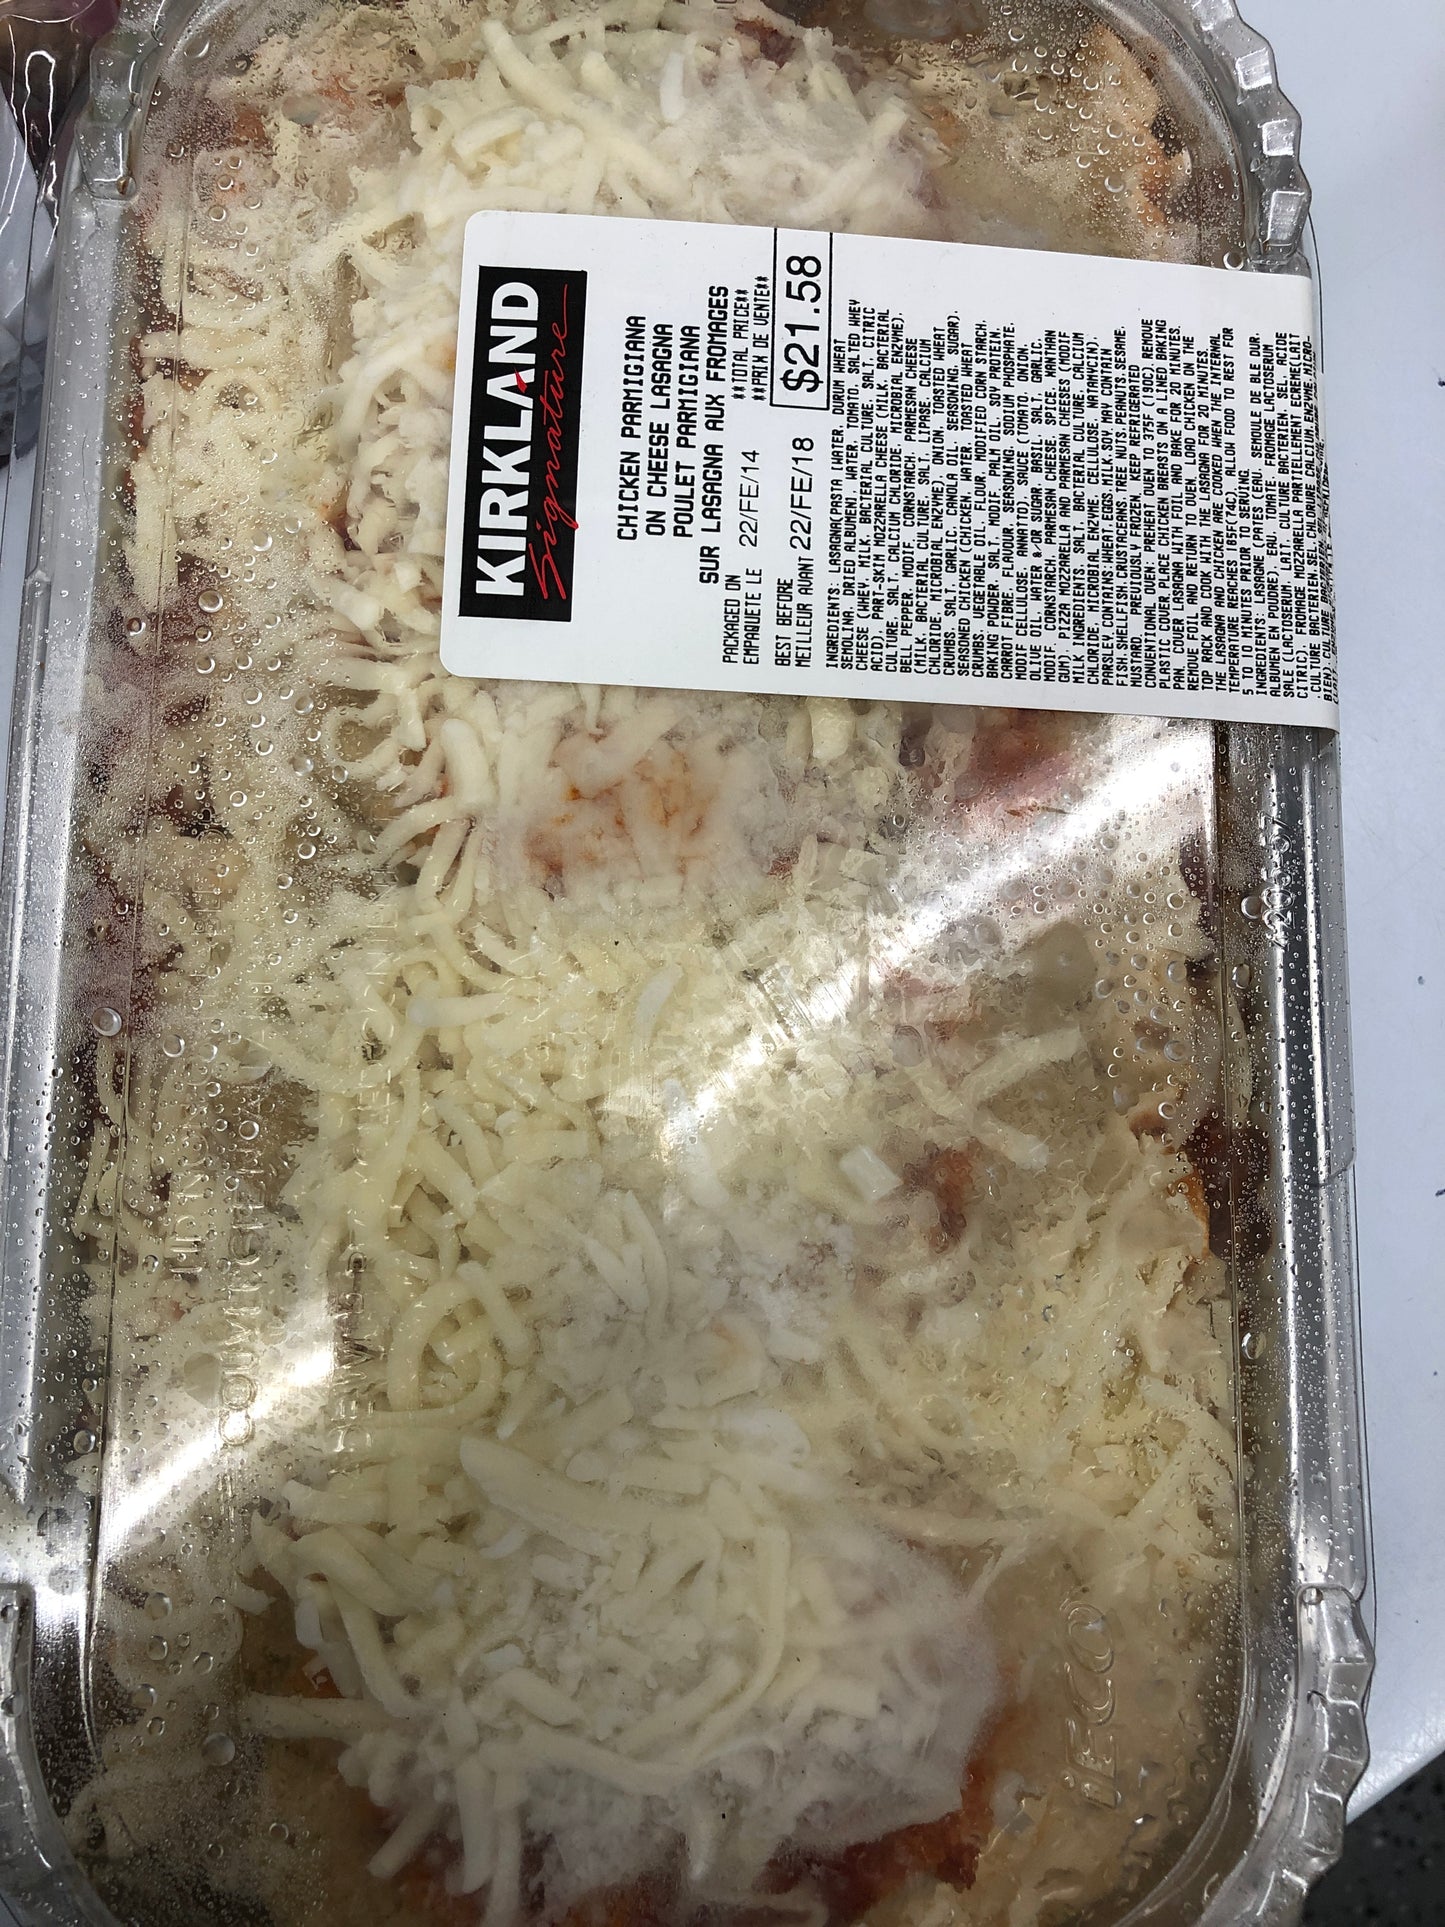 Chicken parmigiana on cheese lasagna